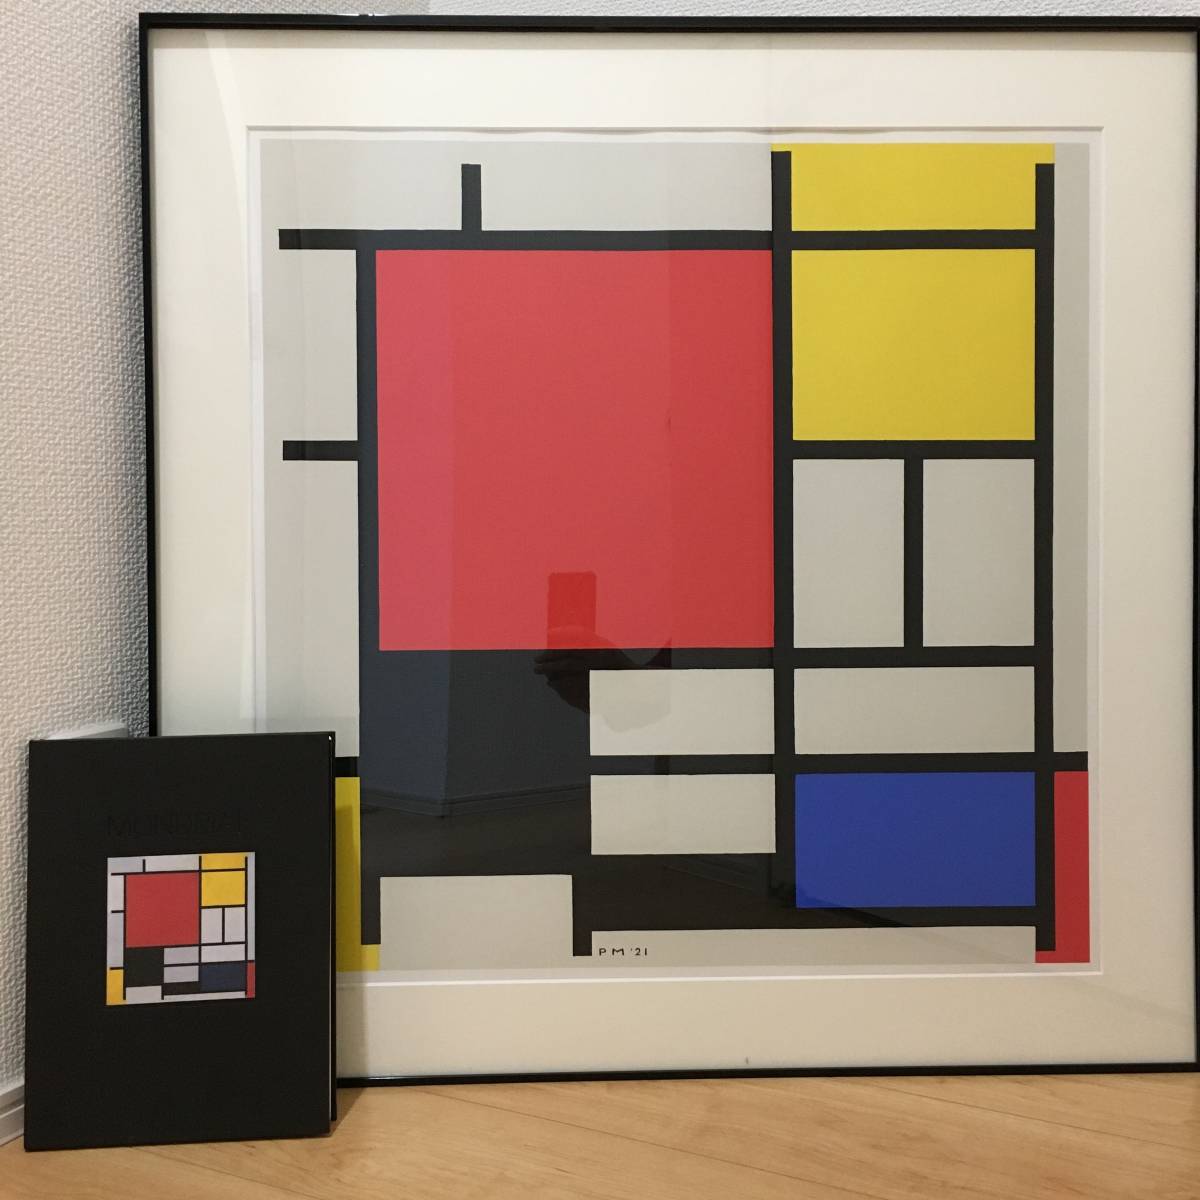 ピエト・モンドリアン 赤黄青と黒のコンポジション 額寸75.5×76.5cm　ART GRAPHICS AOYAMA製 1998年/カタログ 額装 美術品 Composition